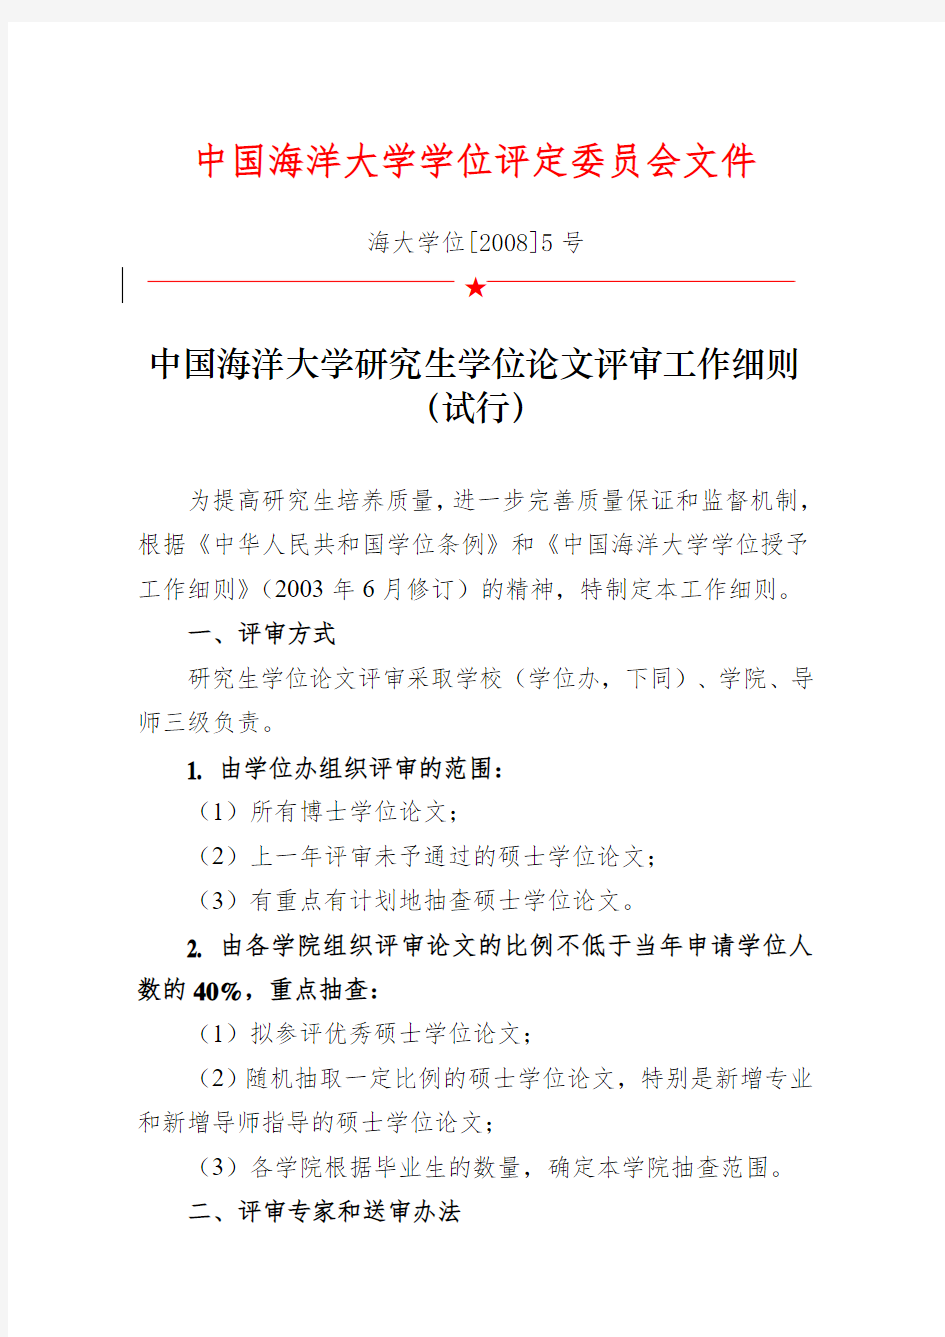 中国海洋大学研究生学位论文评审工作细则(试行)